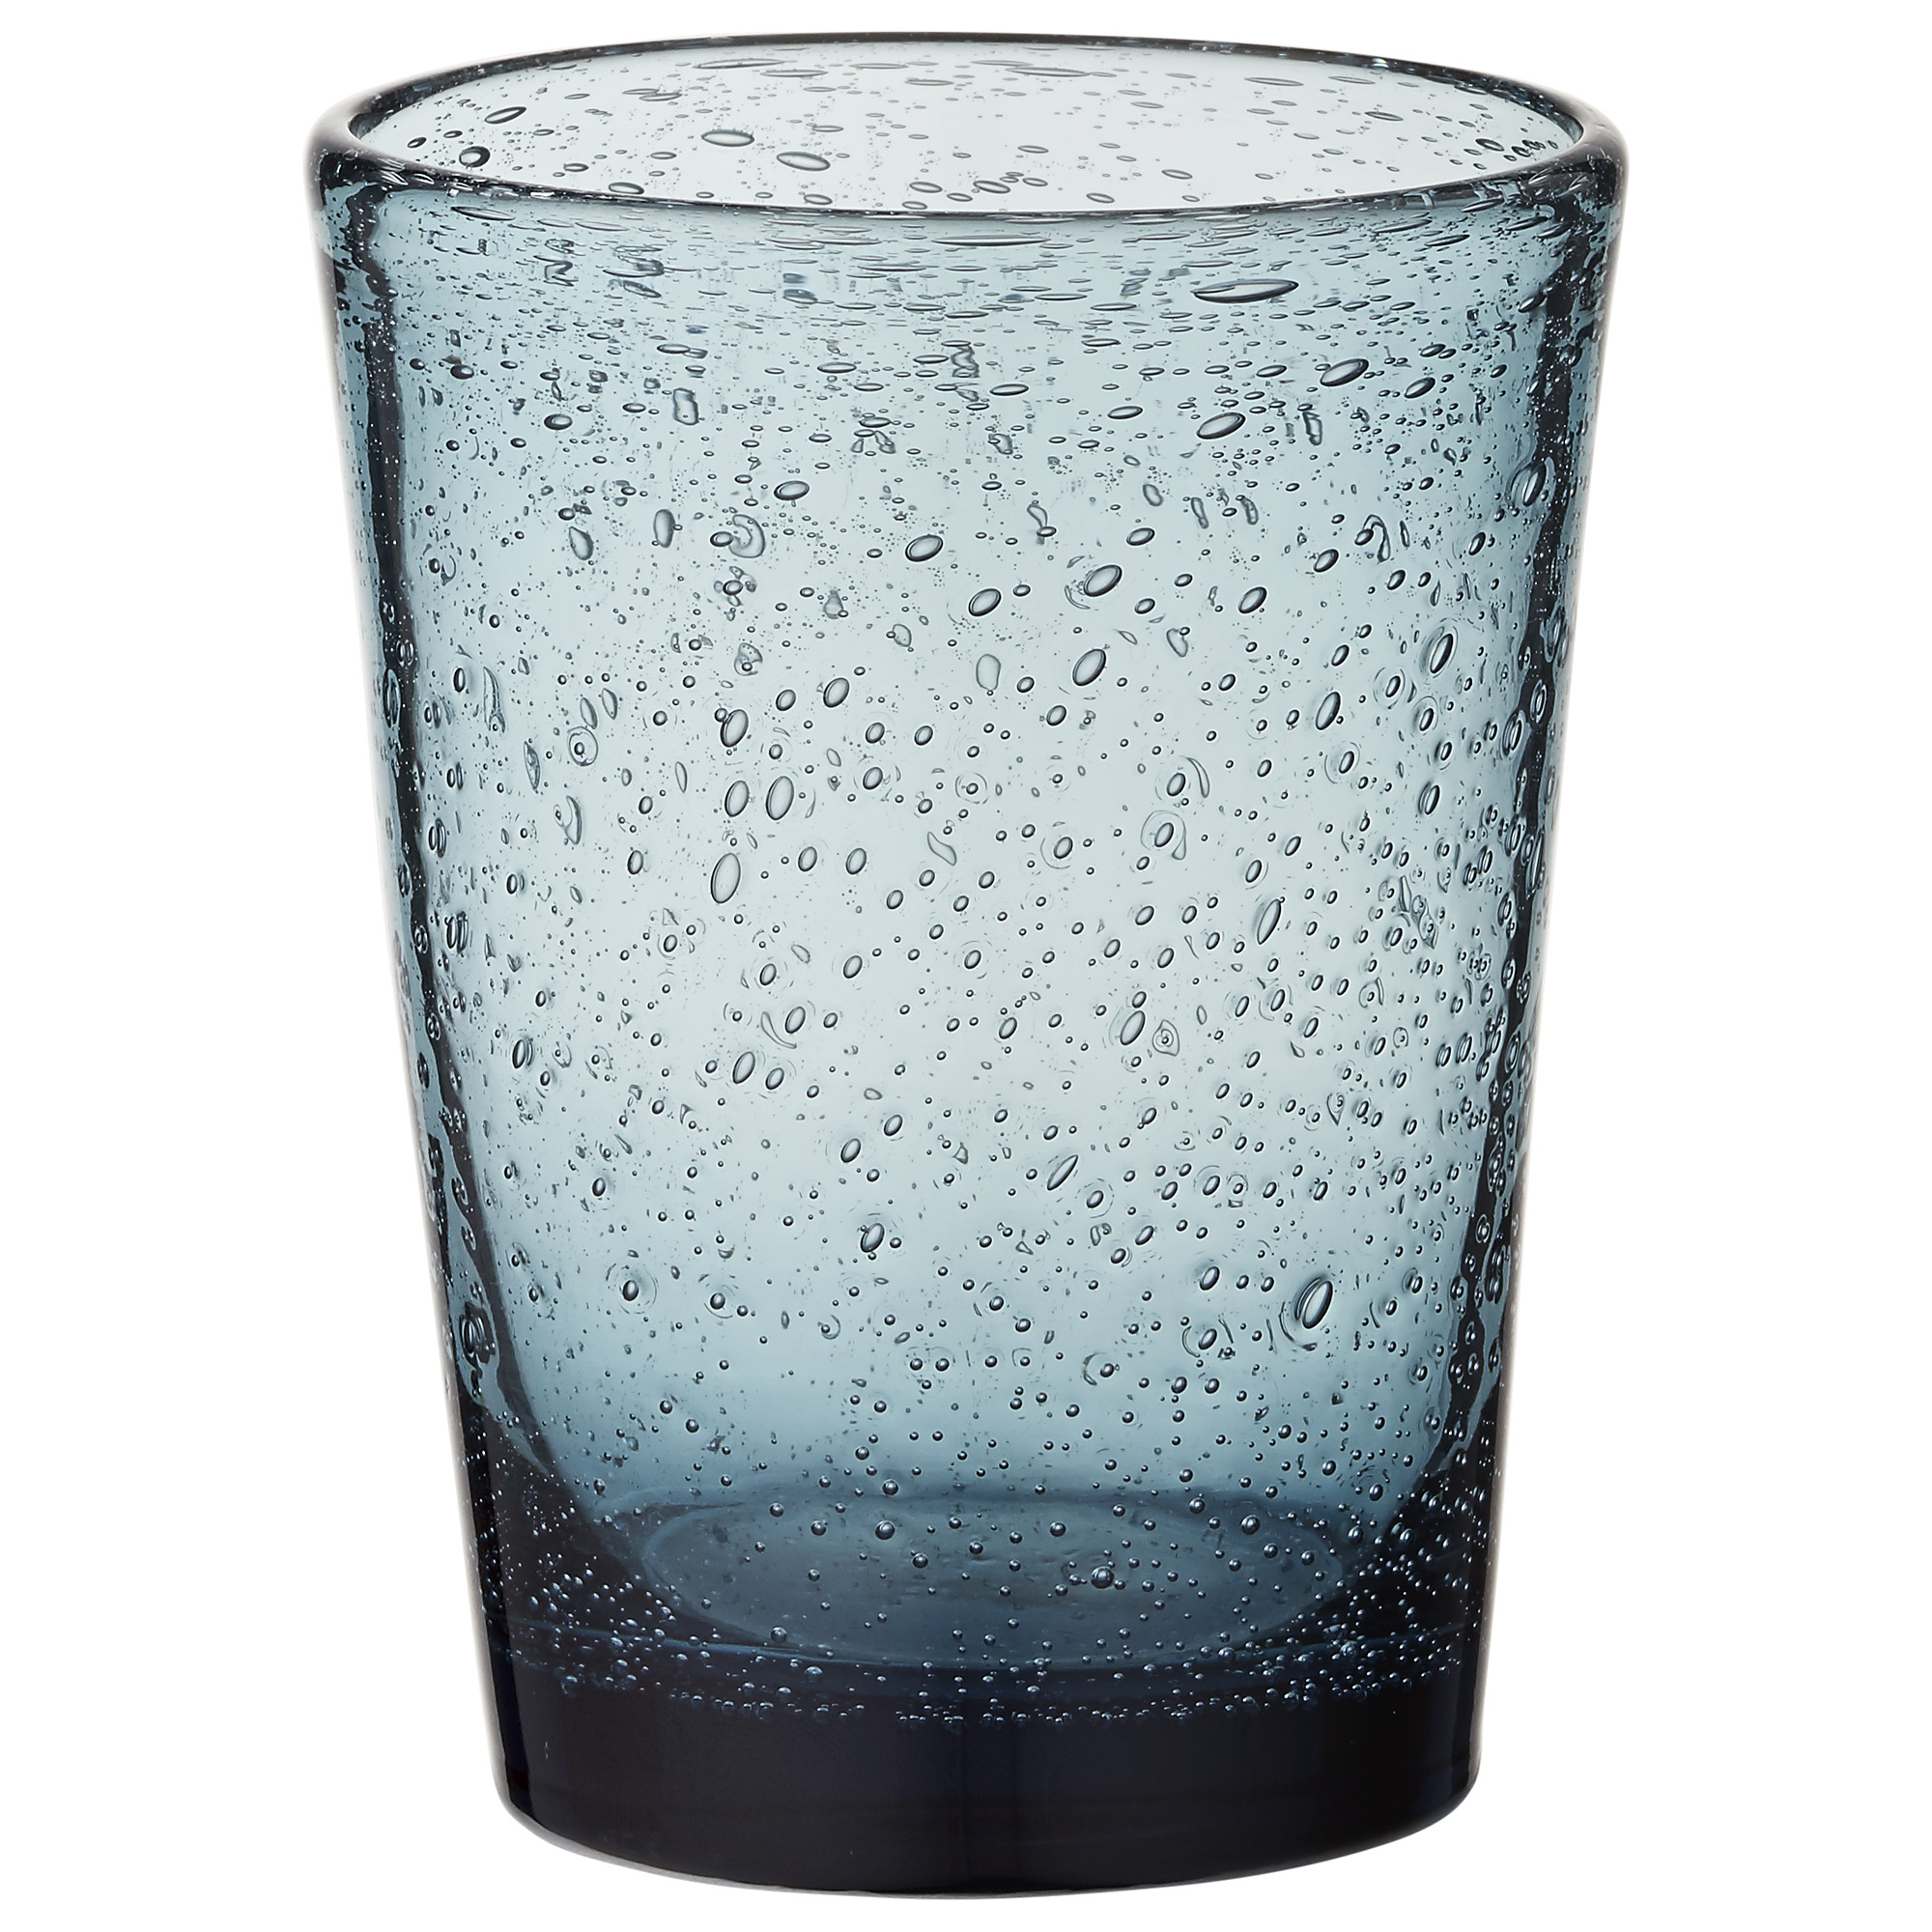 Бокал пузырьками. Lene Bjerre стакан. Стаканы с пузырьками воздуха. Стеклянные стаканы с пузырьками. Стакан стеклянный.